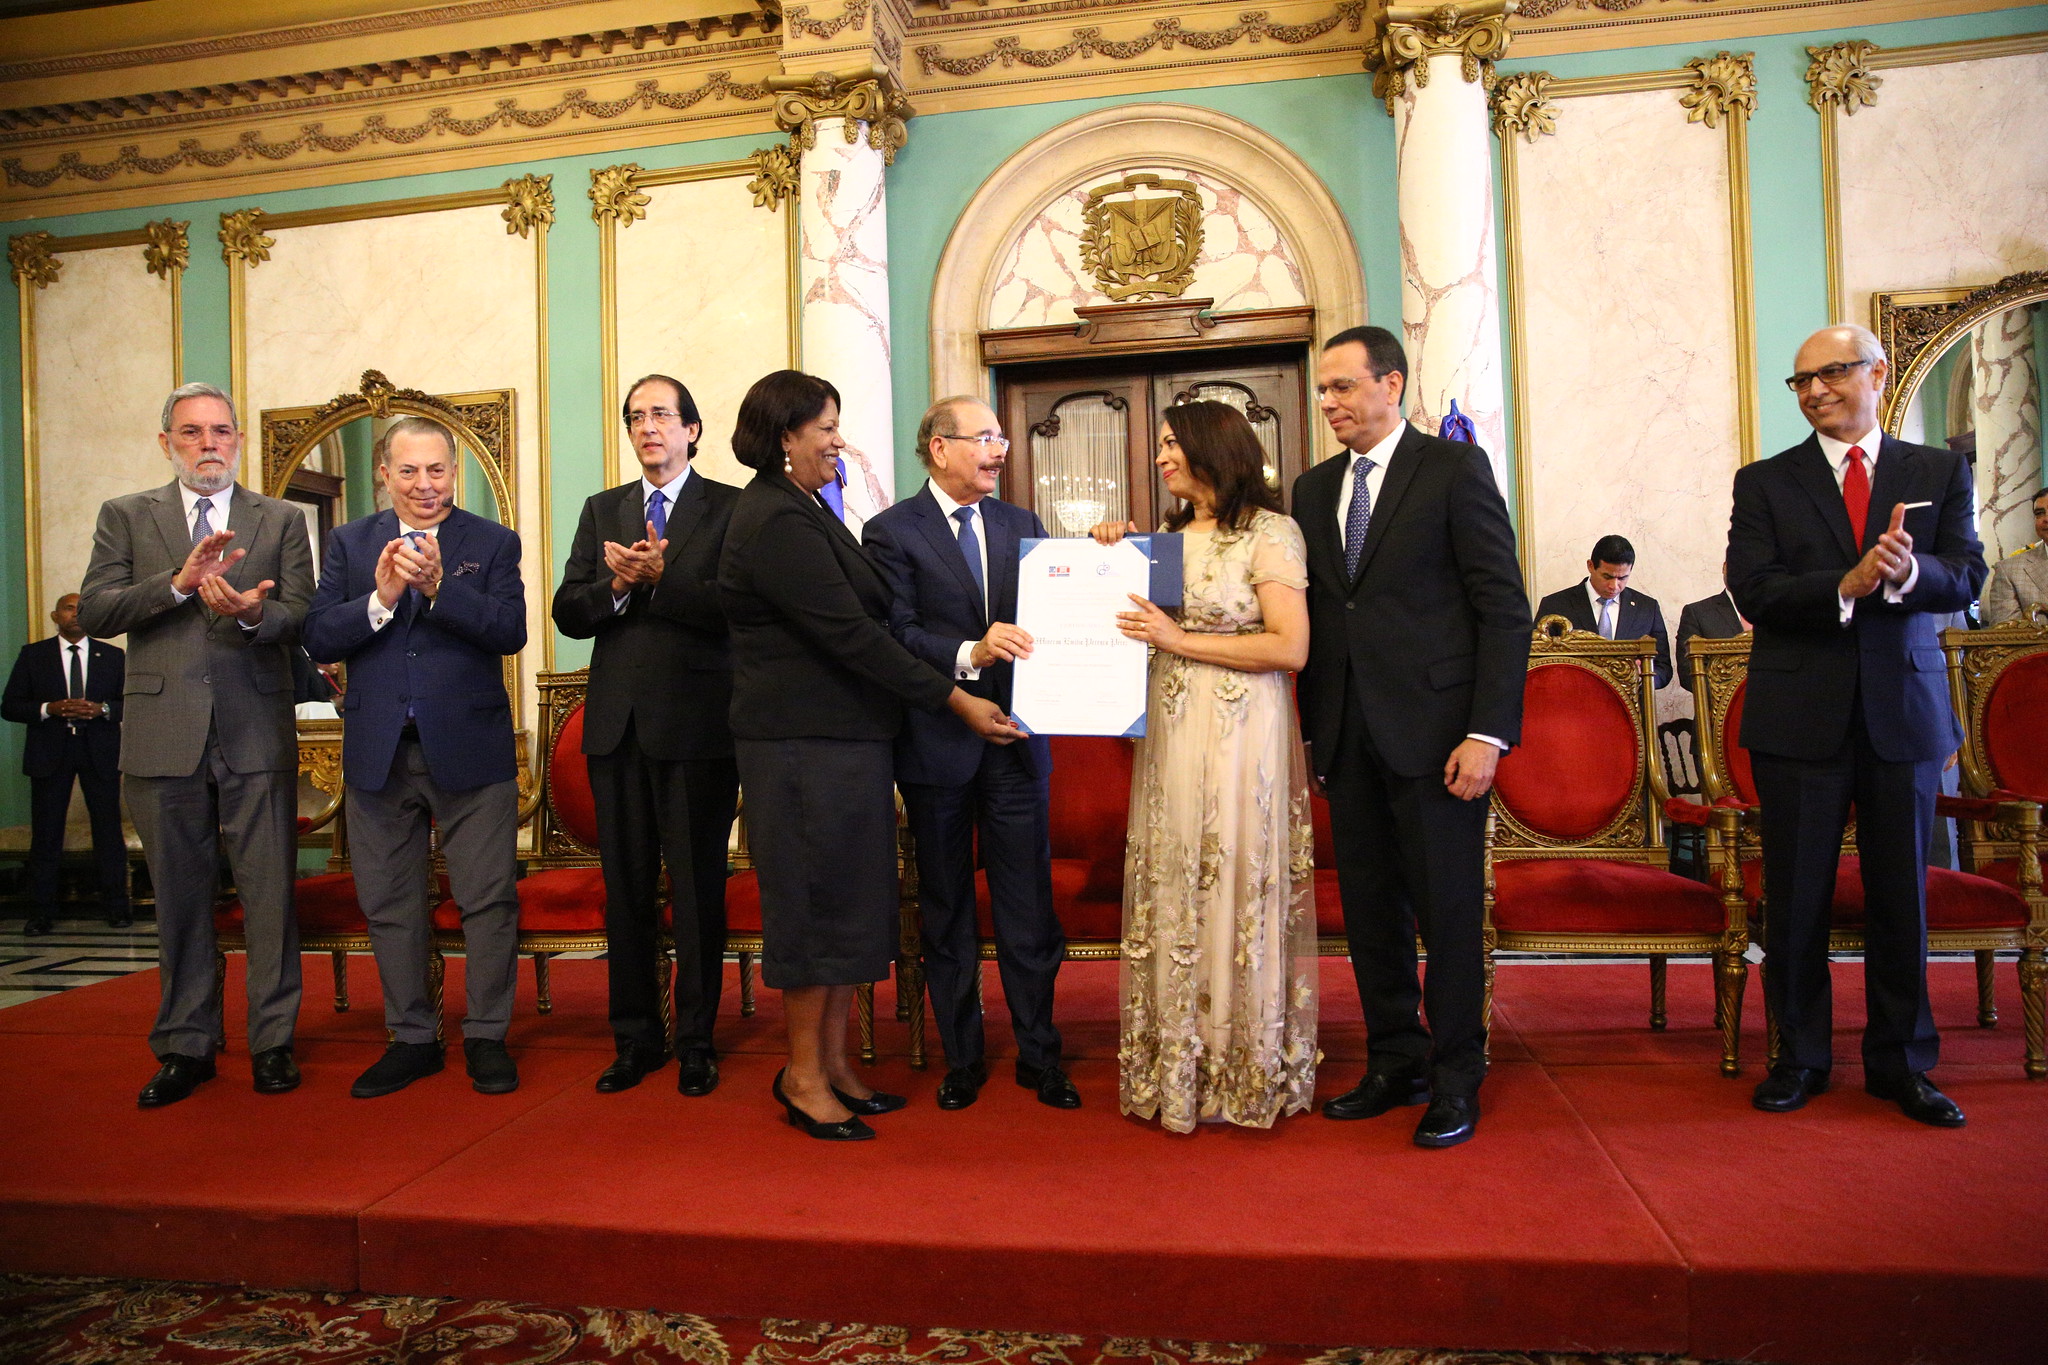 REPÚBLICA DOMINICANA: Presidente Danilo Medina entrega Premio Nacional de Periodismo 2019 a Emilia Pereyra